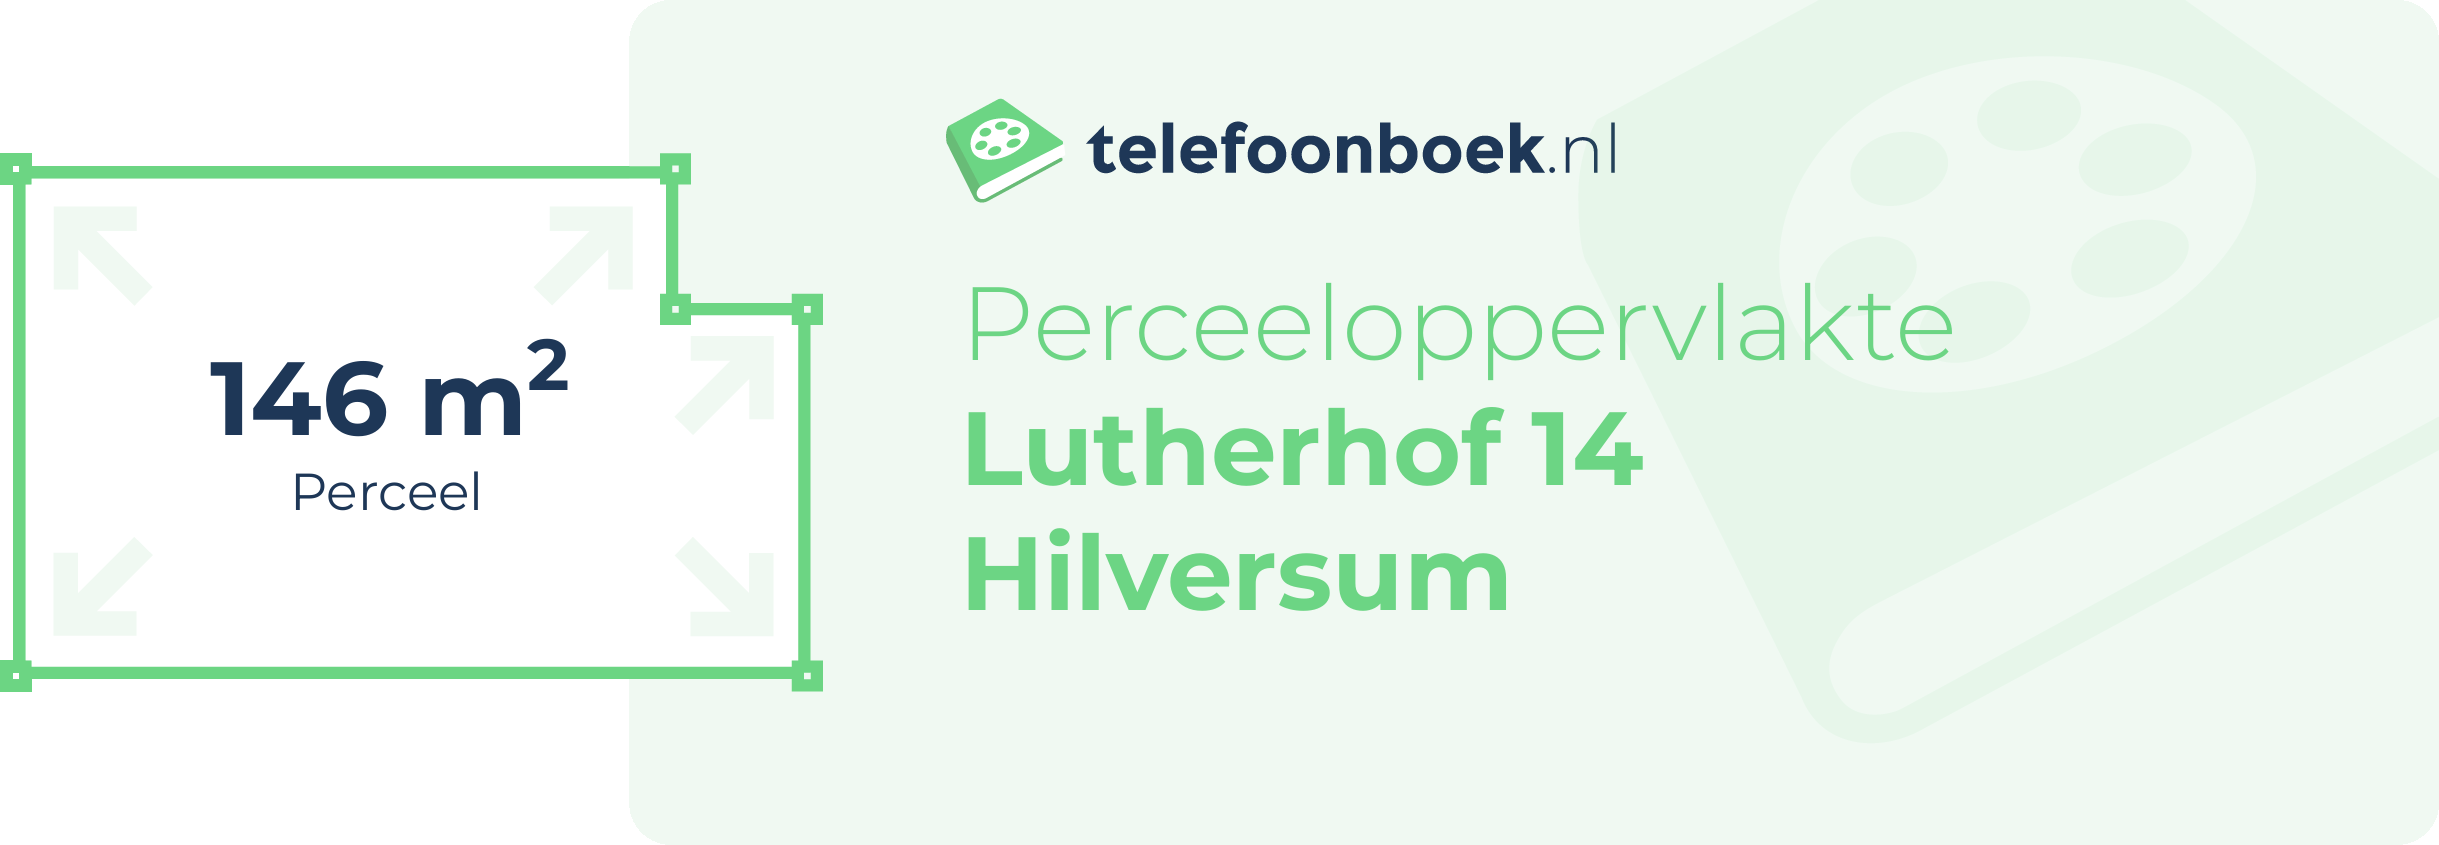 Perceeloppervlakte Lutherhof 14 Hilversum